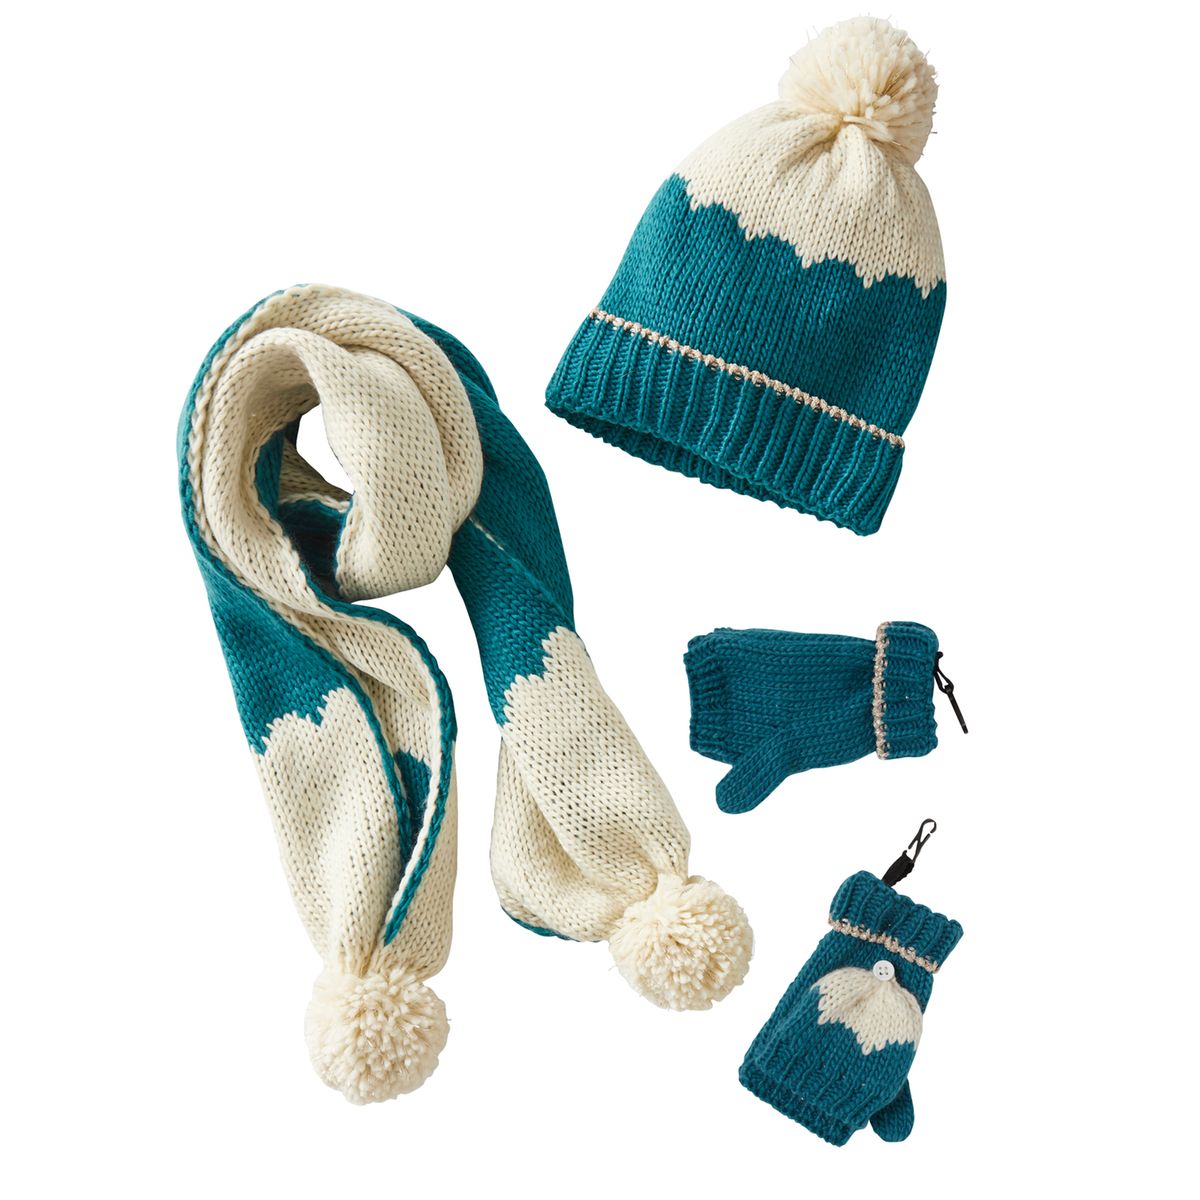 Ensemble bonnet + écharpe + moufles/mitaines bleu Vertbaudet